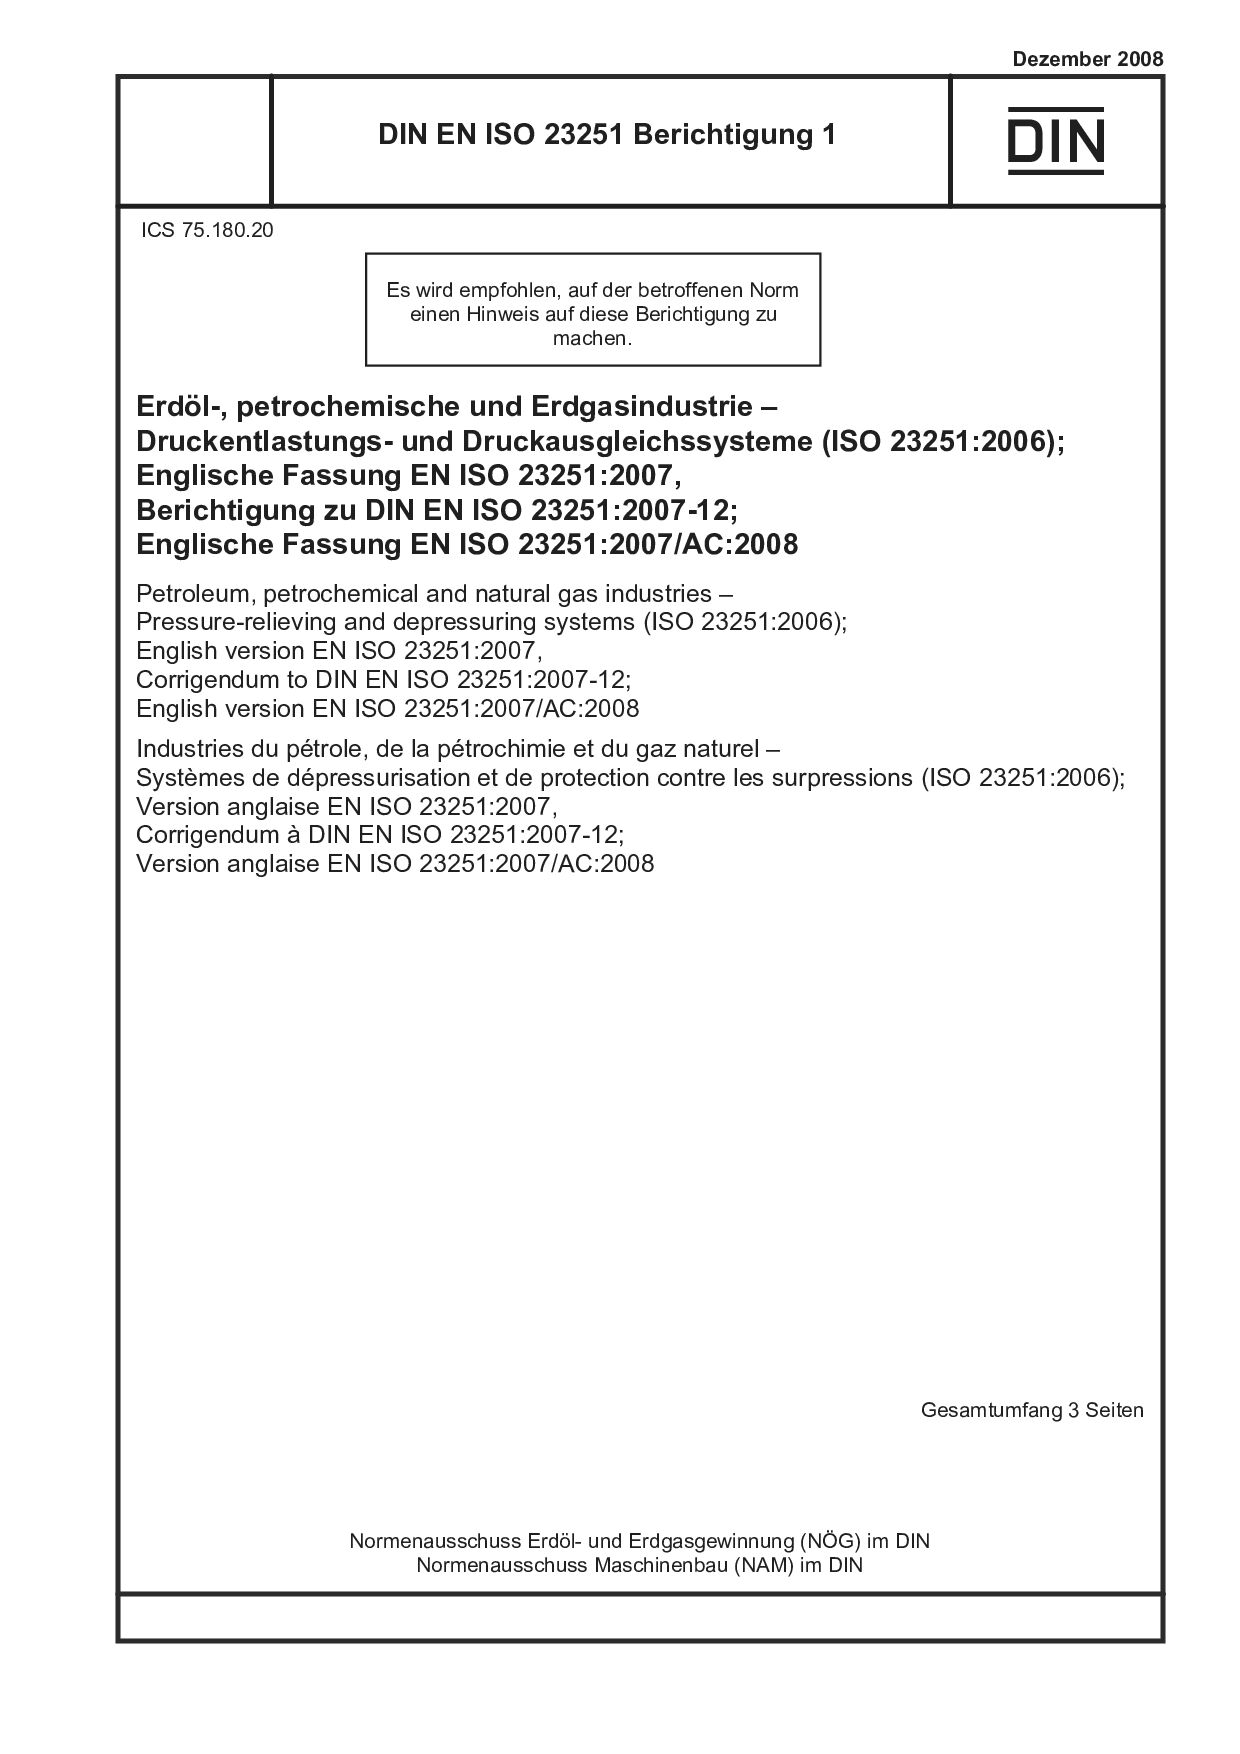 DIN EN ISO 23251 Berichtigung 1:2008